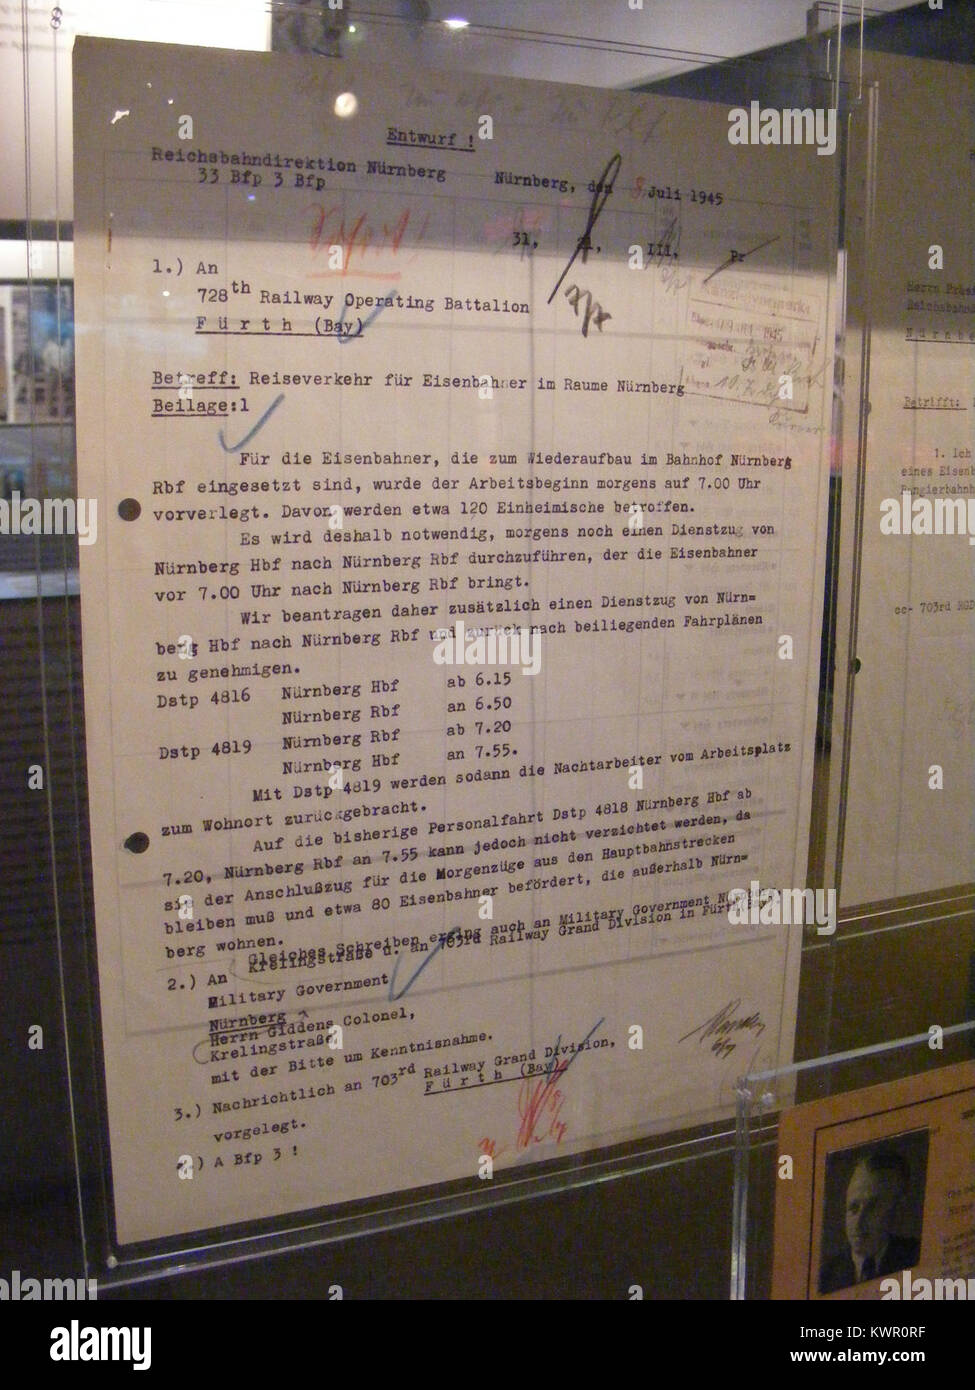 DB Museum Nürnberg - Antrag auf der Zugverkehrs Einrichtung eines Reichsbahndirektion Nürnberg (1945). Foto de stock